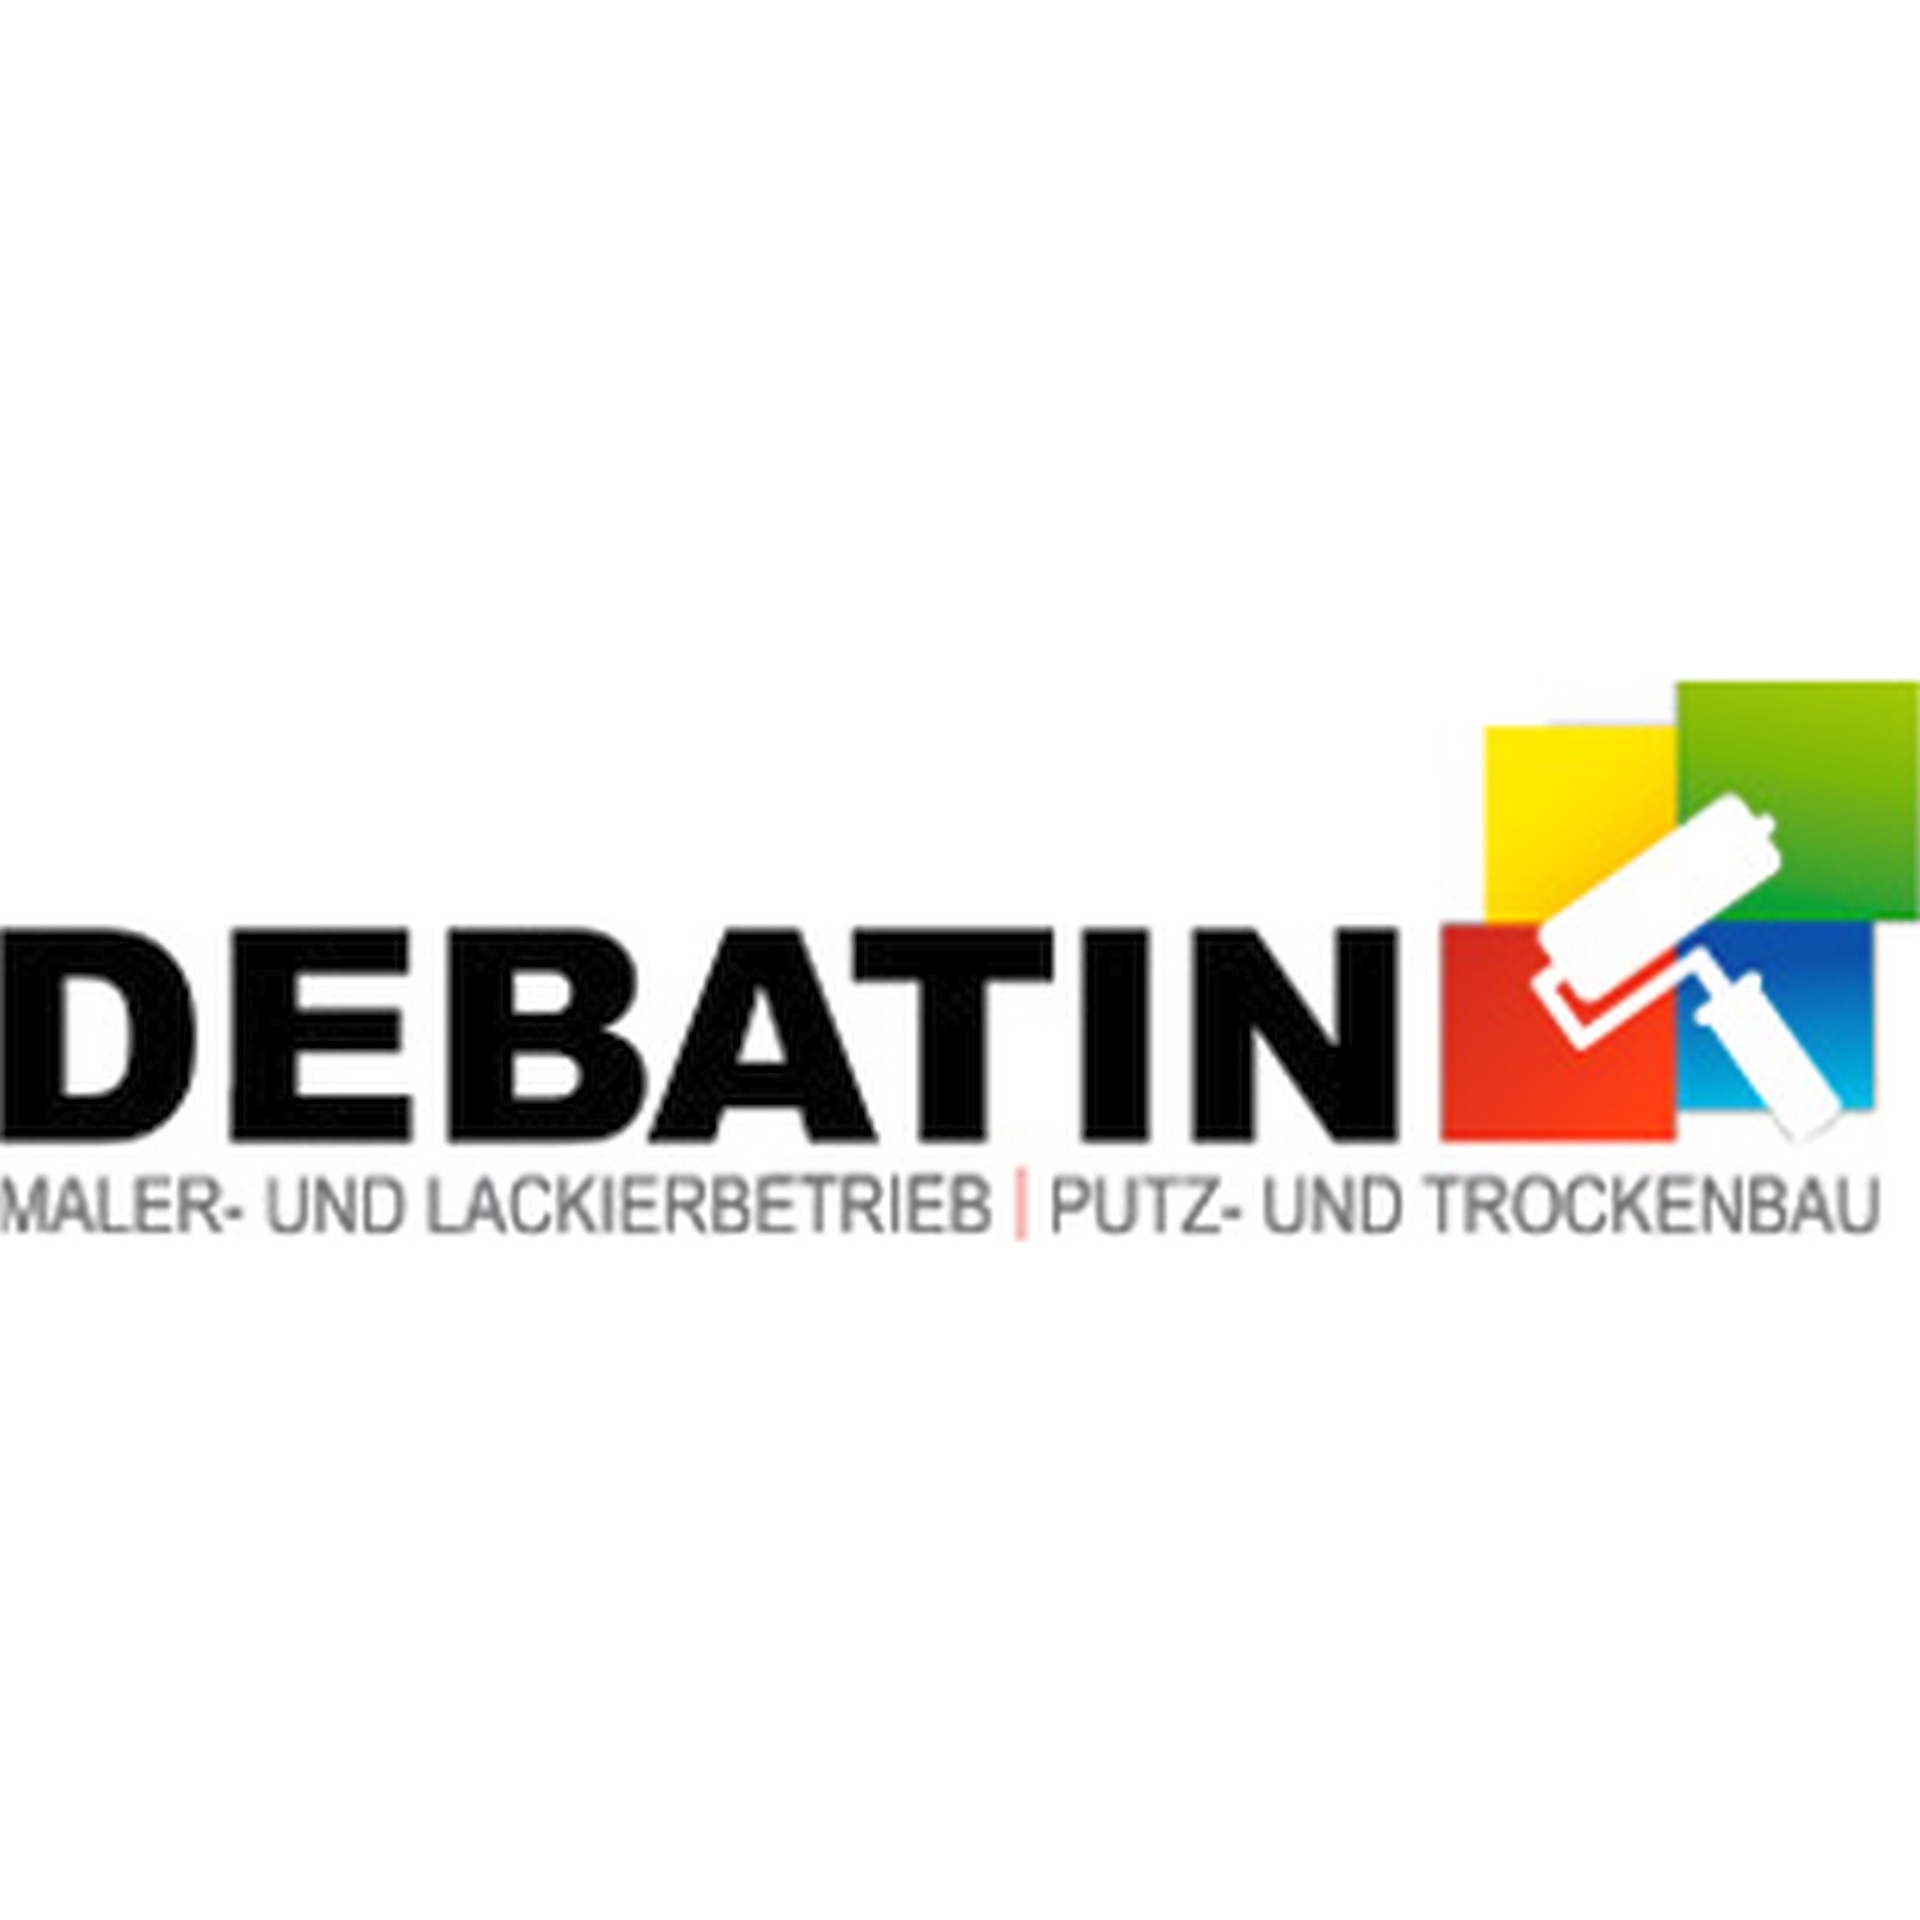 Werner Debatin GmbH Maler und Lackierbetrieb Putz und Trockenbau in Bruchsal - Logo